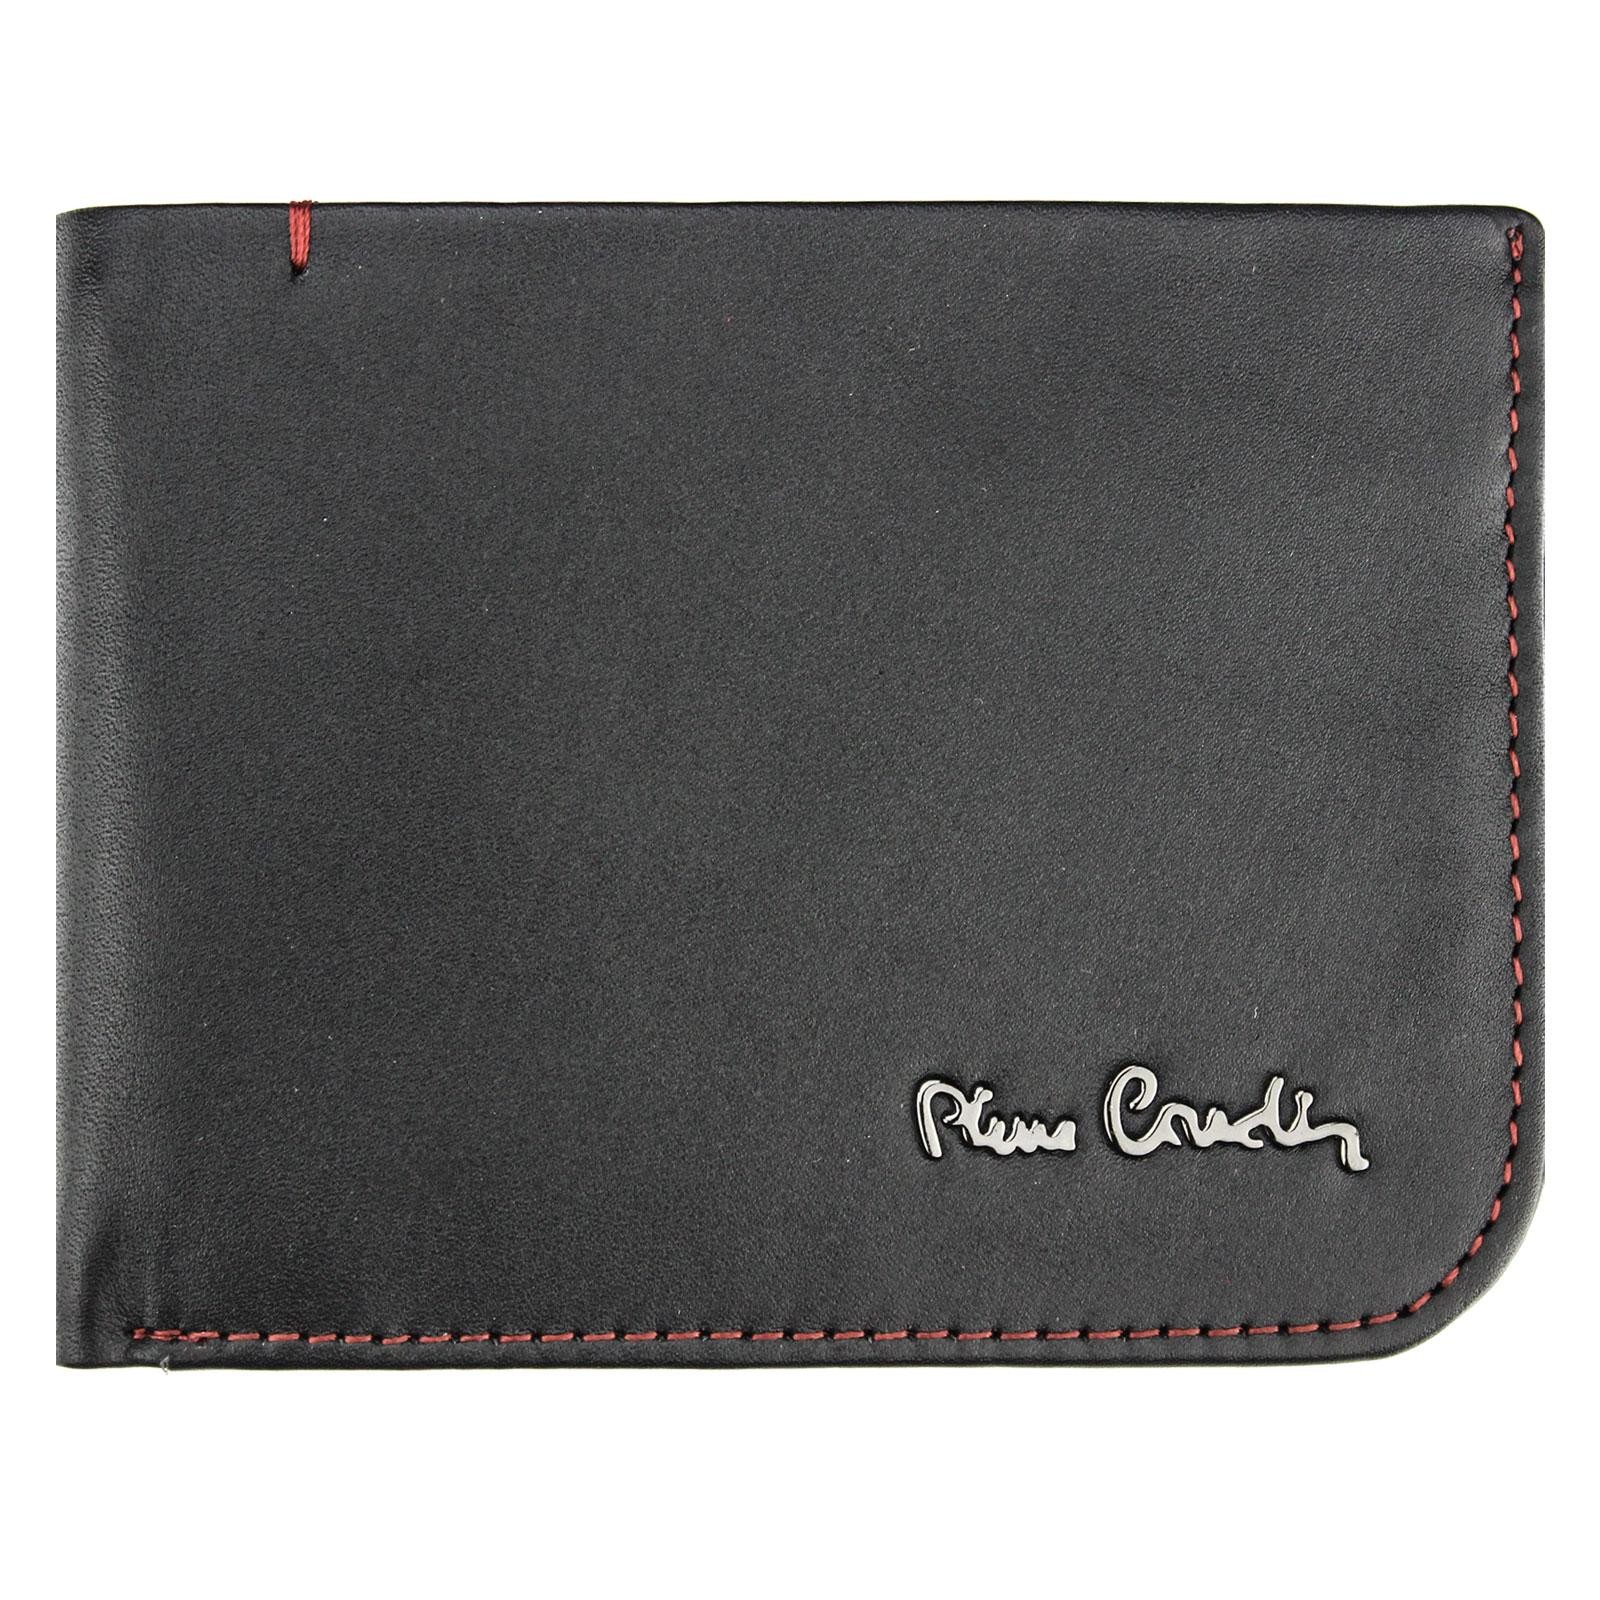 Pánská kožená peněženka Pierre Cardin Hauk - černo-červená